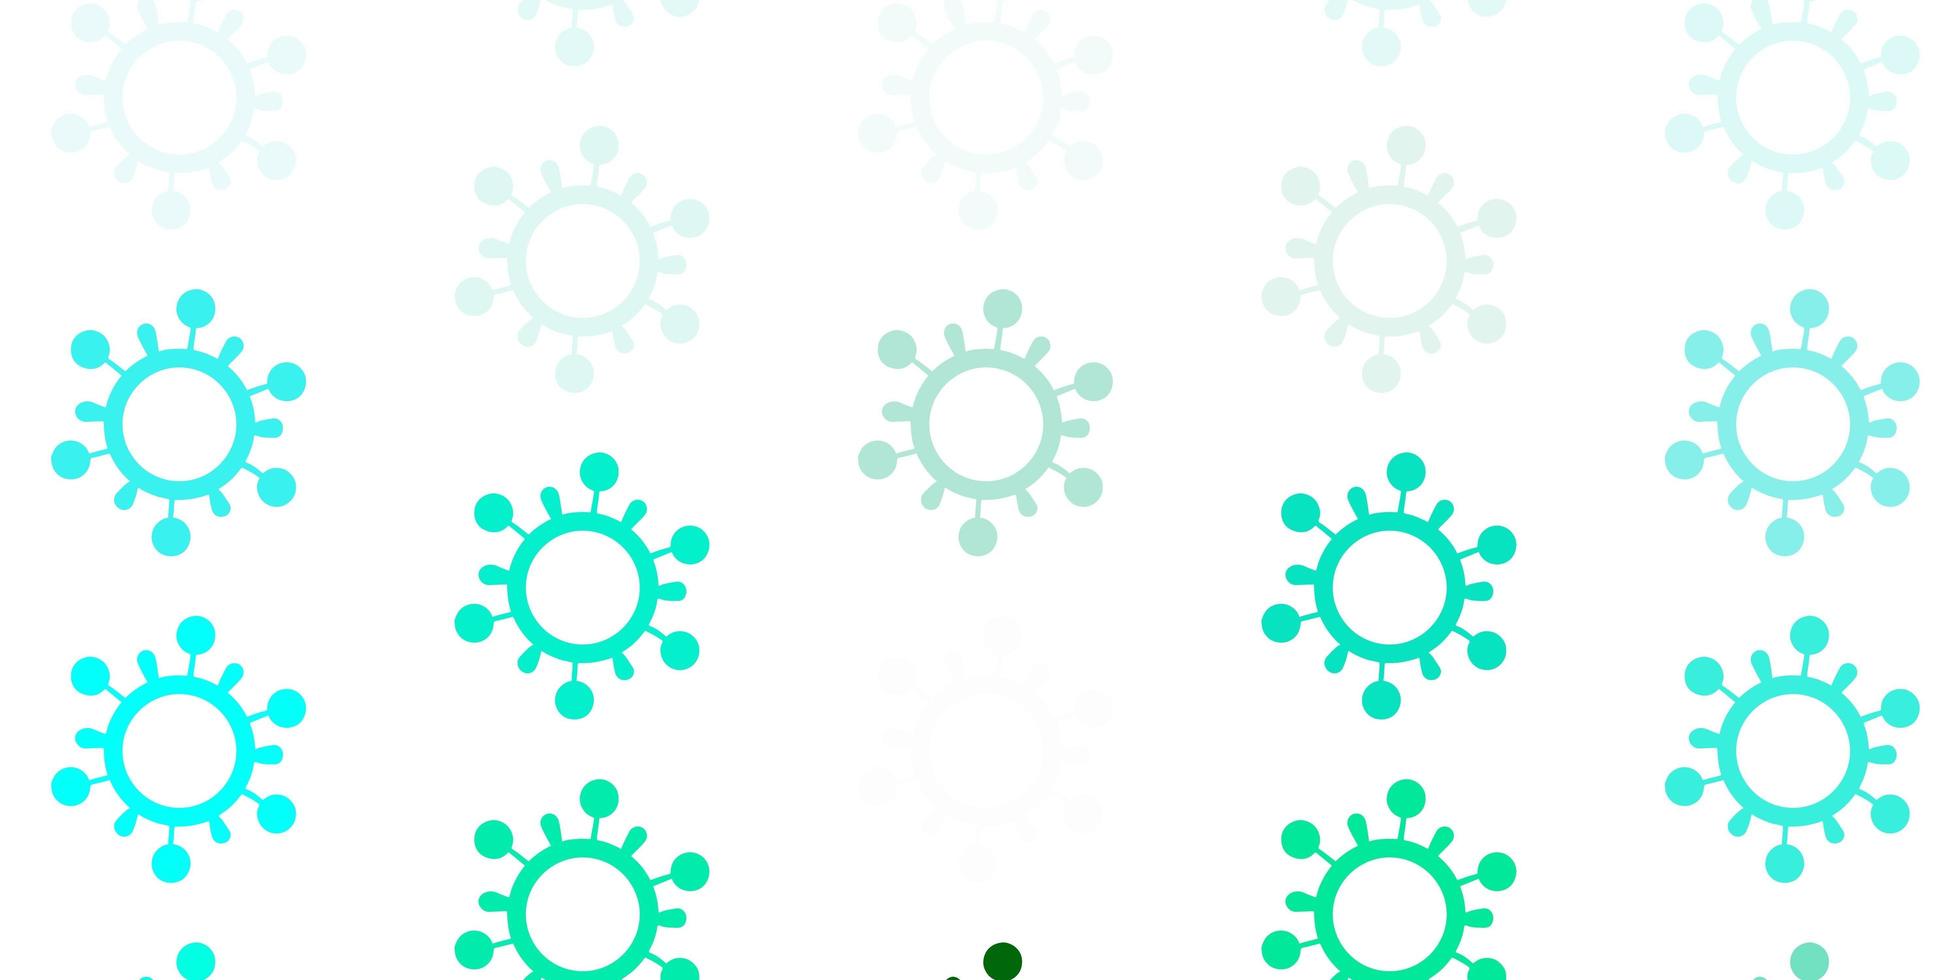 modèle vectoriel vert clair avec des signes de grippe.